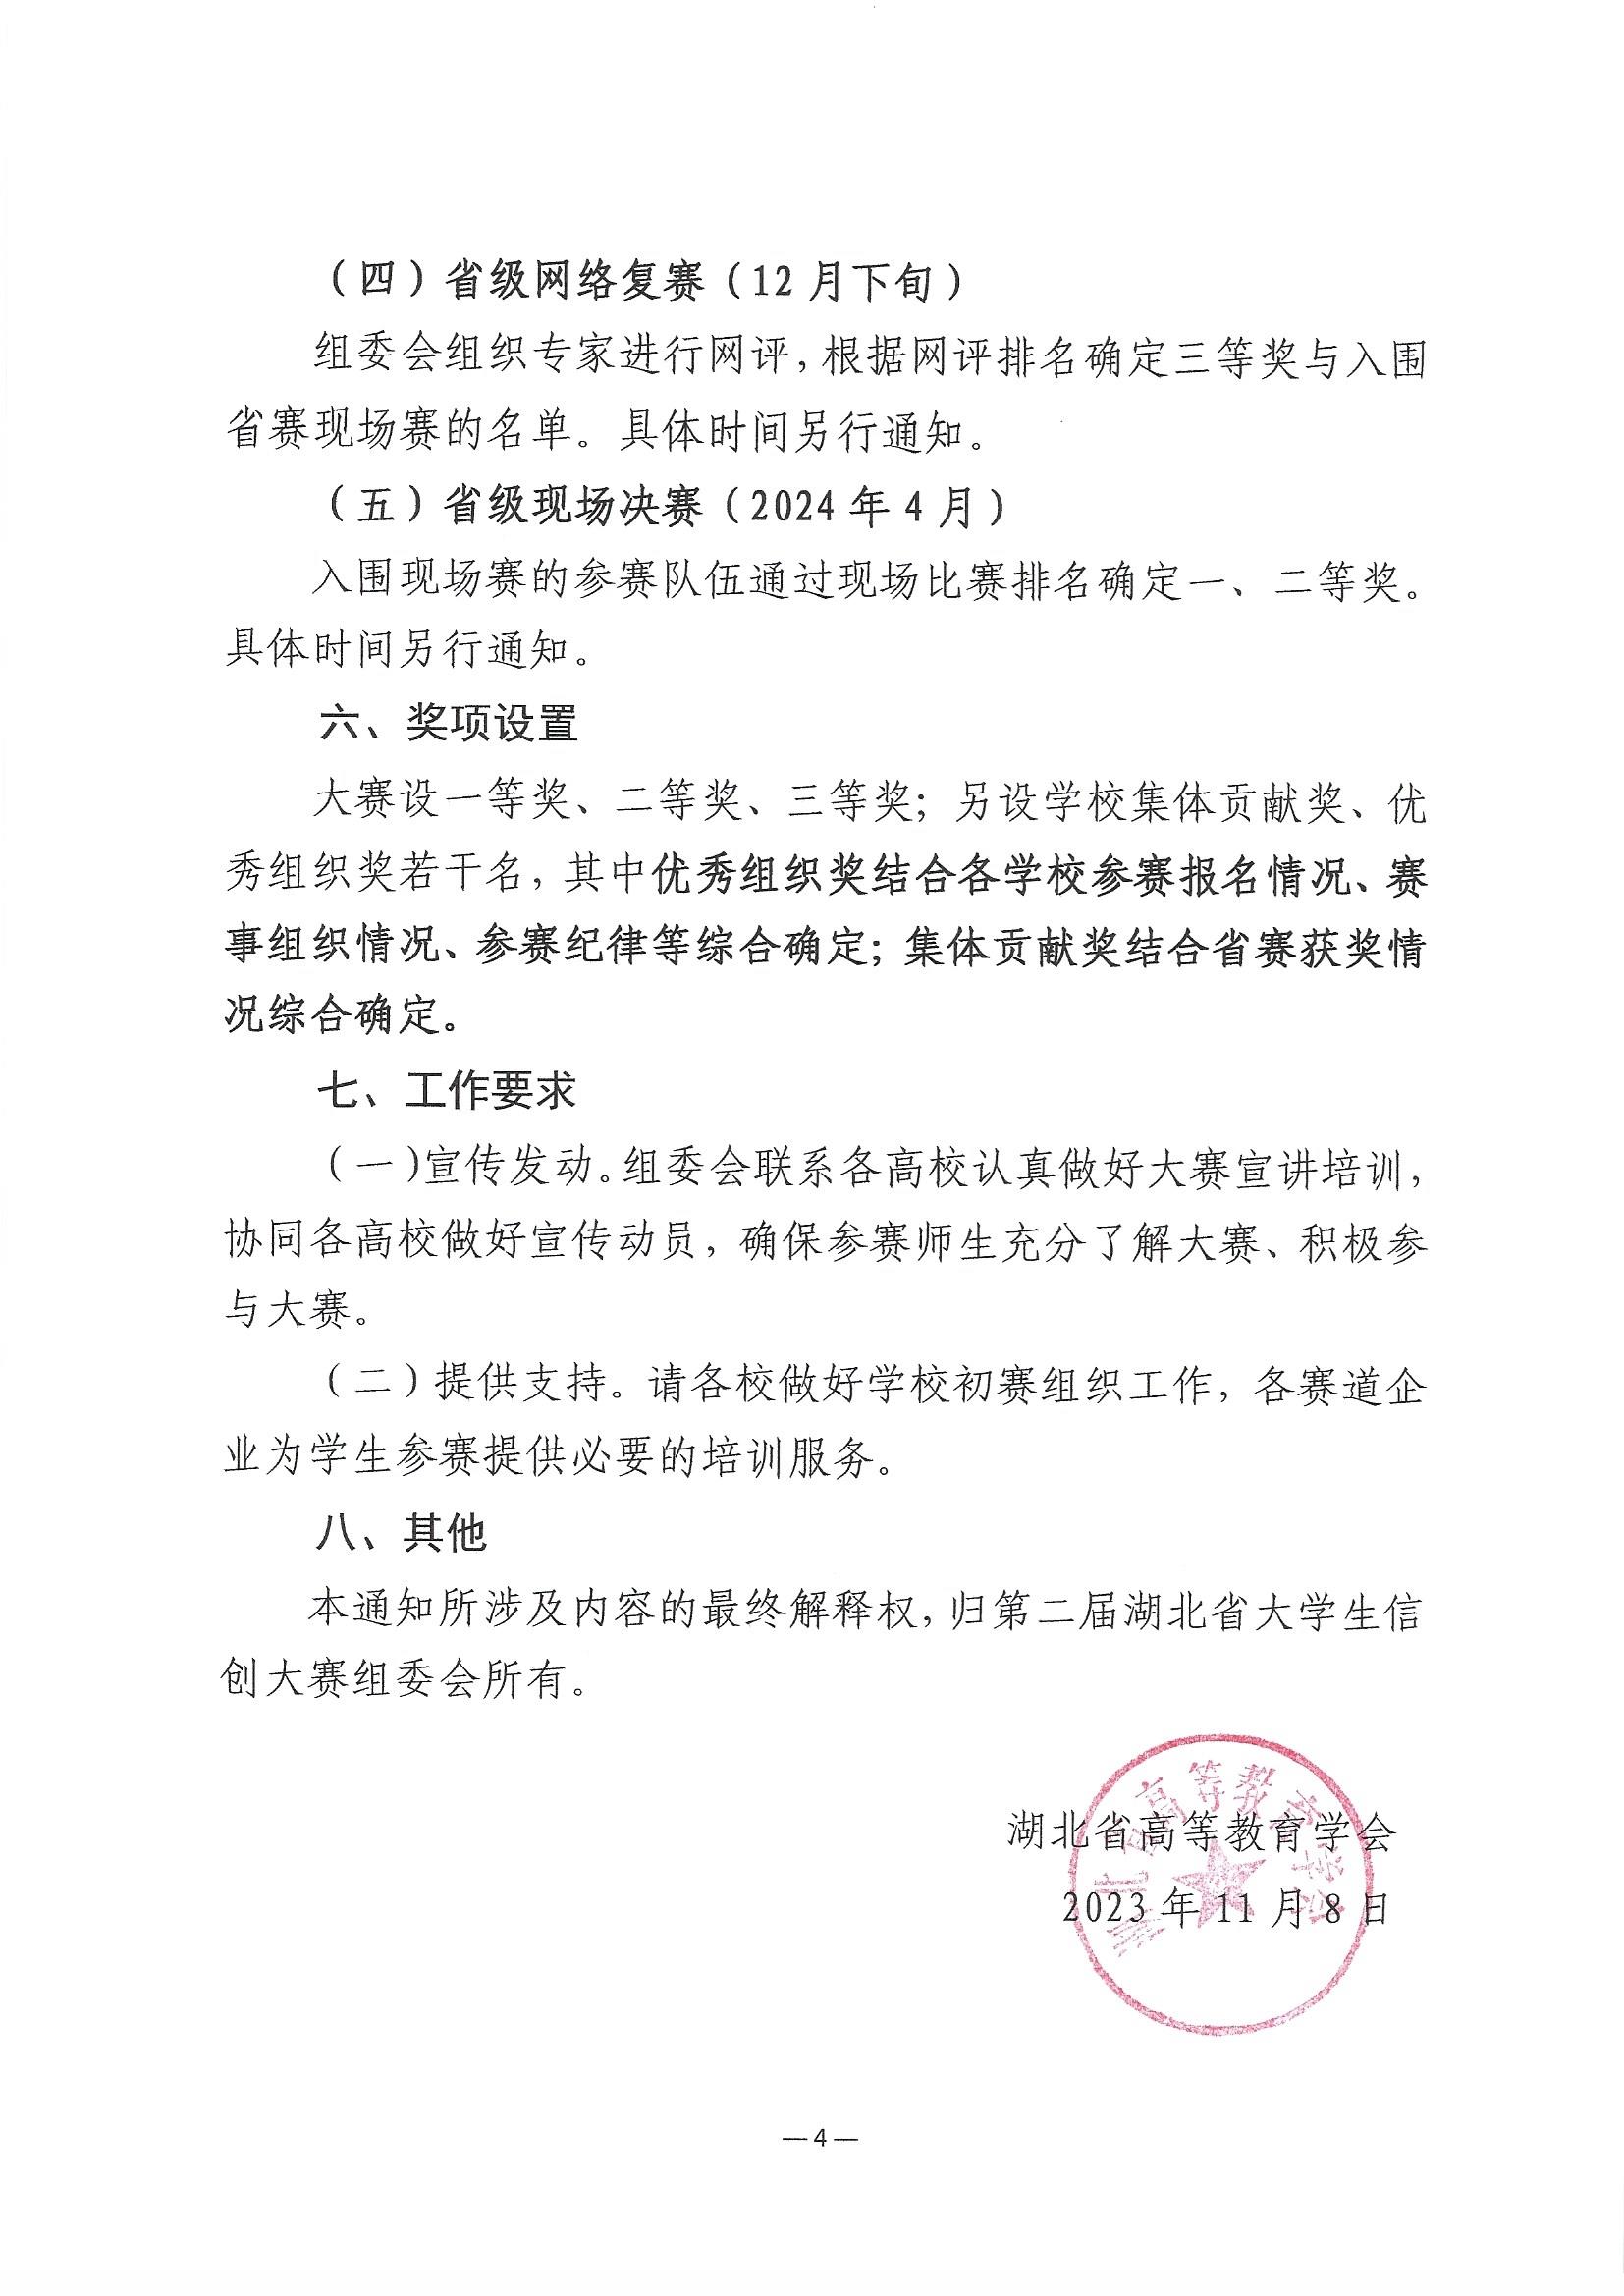 2023.11.9关于举办第三届湖北省大学生信创大赛的通知_页面_4.jpg